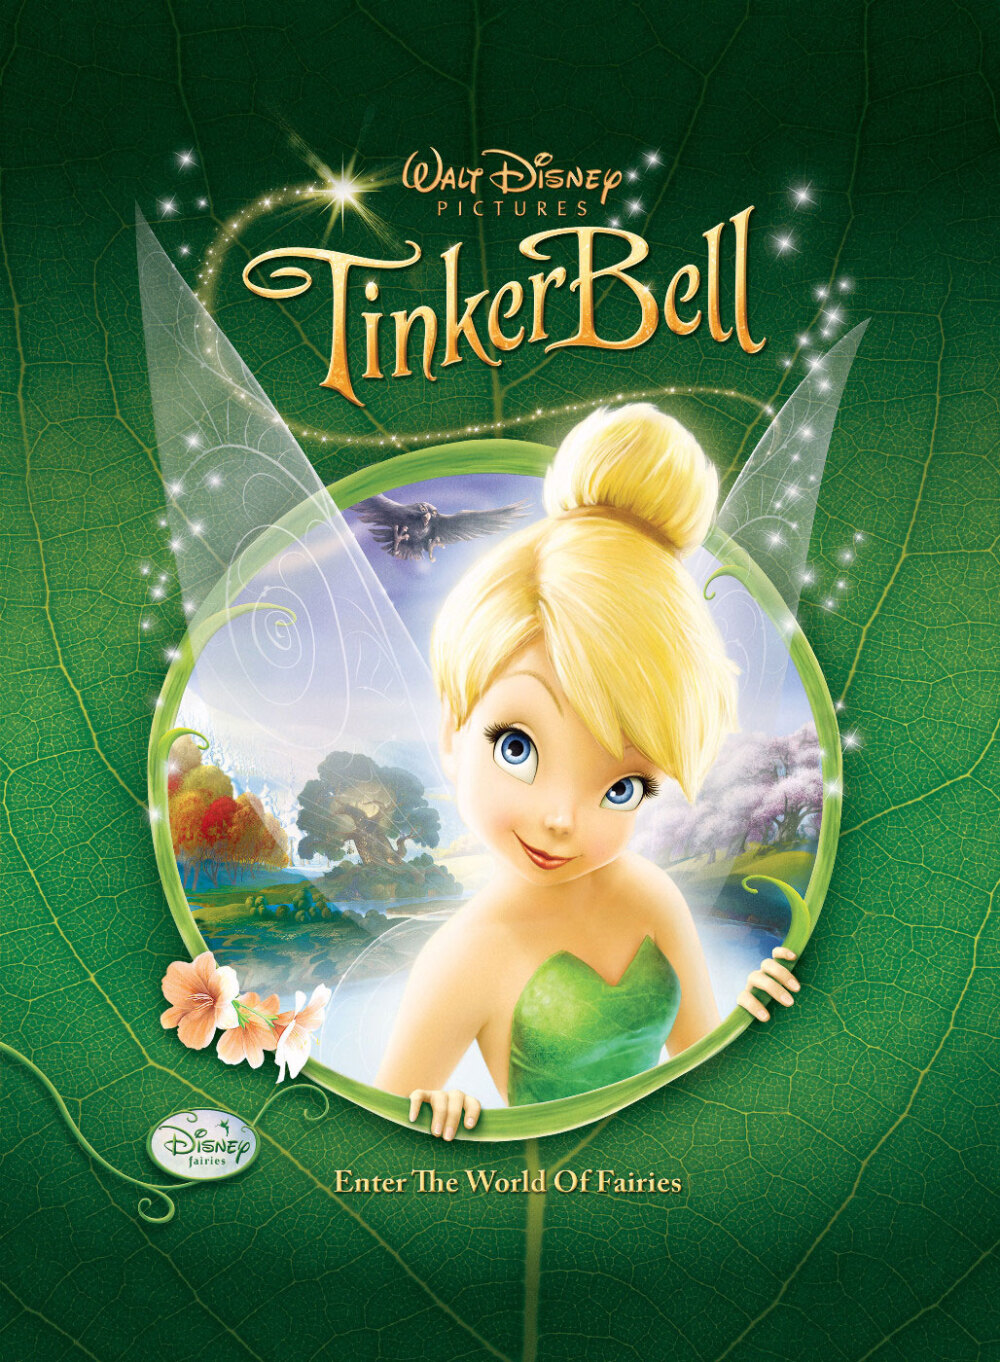 《奇妙仙子1:小叮当tinker bell》——2008年迪士尼动画电影